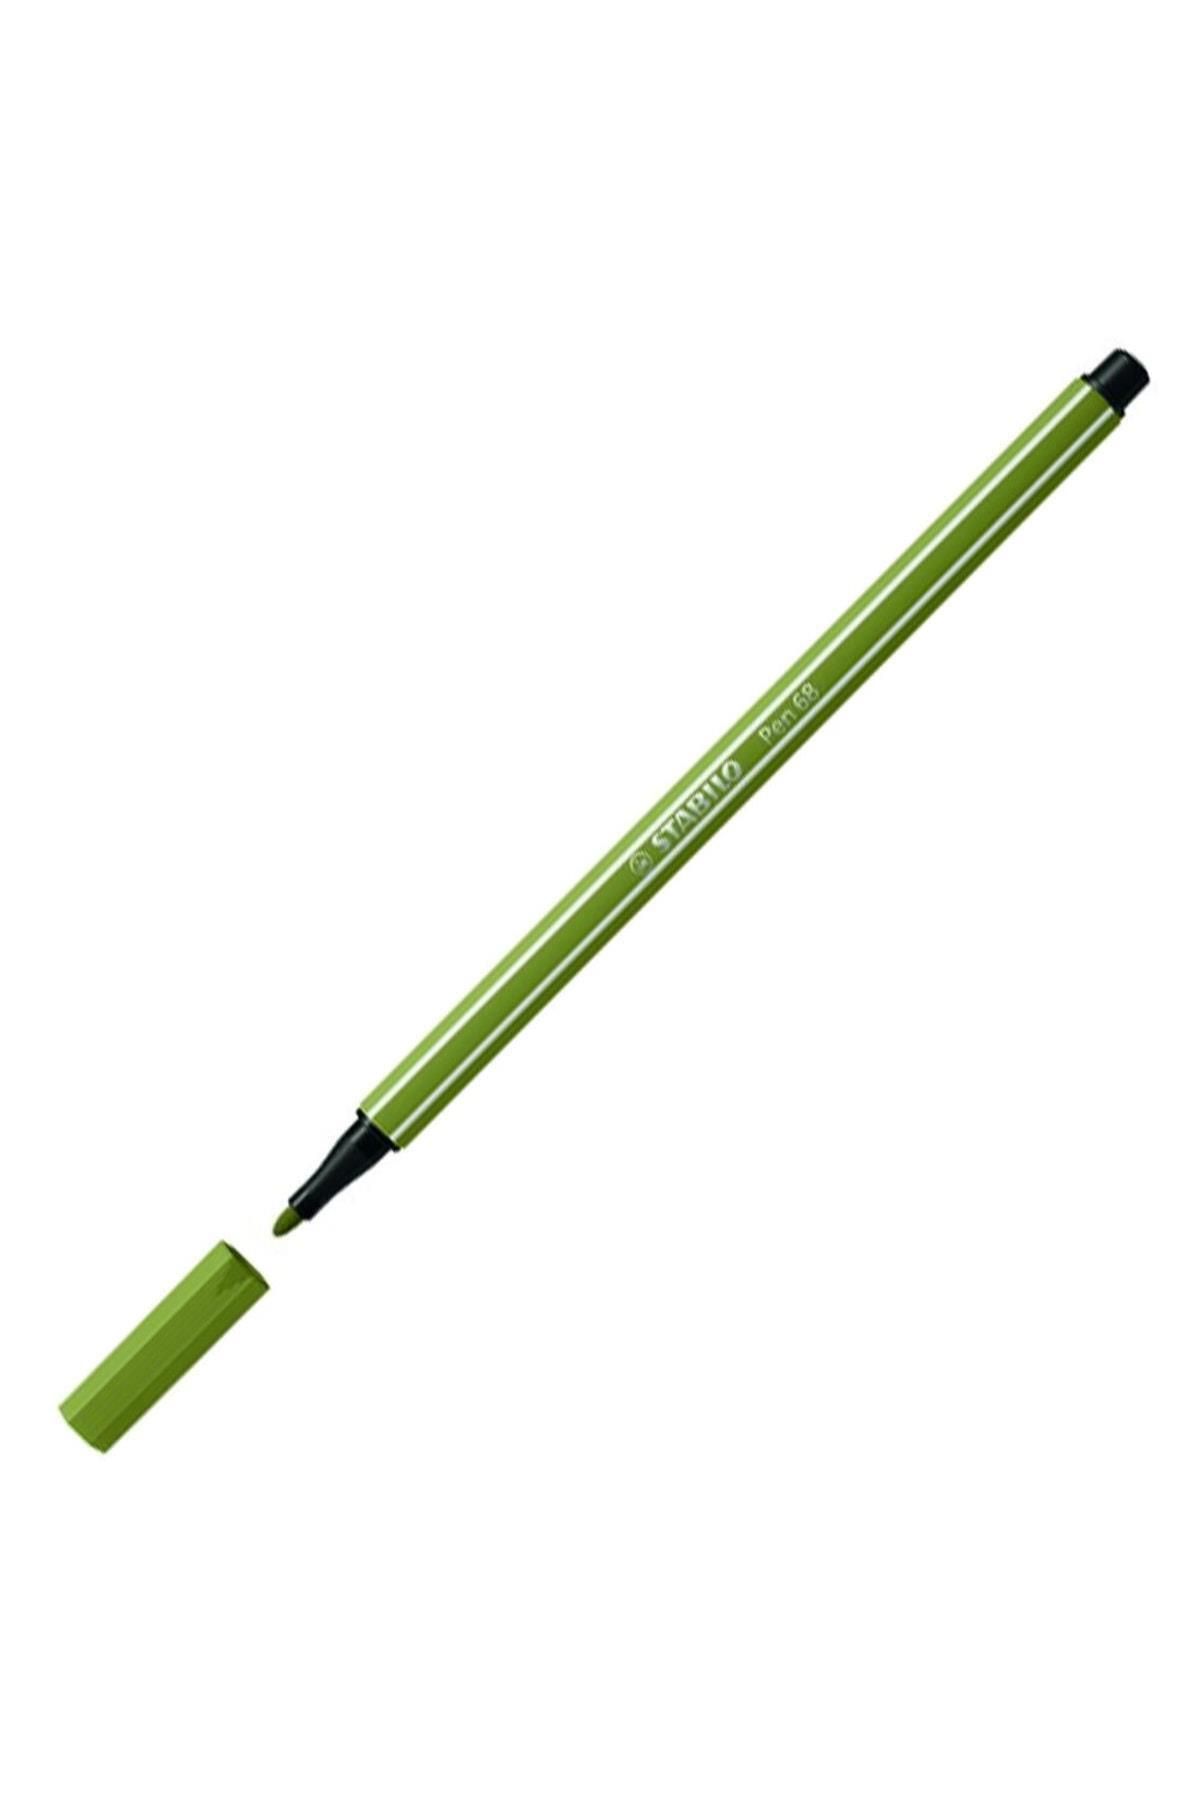 Stabilo Keçe Uçlu Boya Kalemi 1 Mm Bataklık Yeşili Keçeli Kalem (10 LU PAKET)